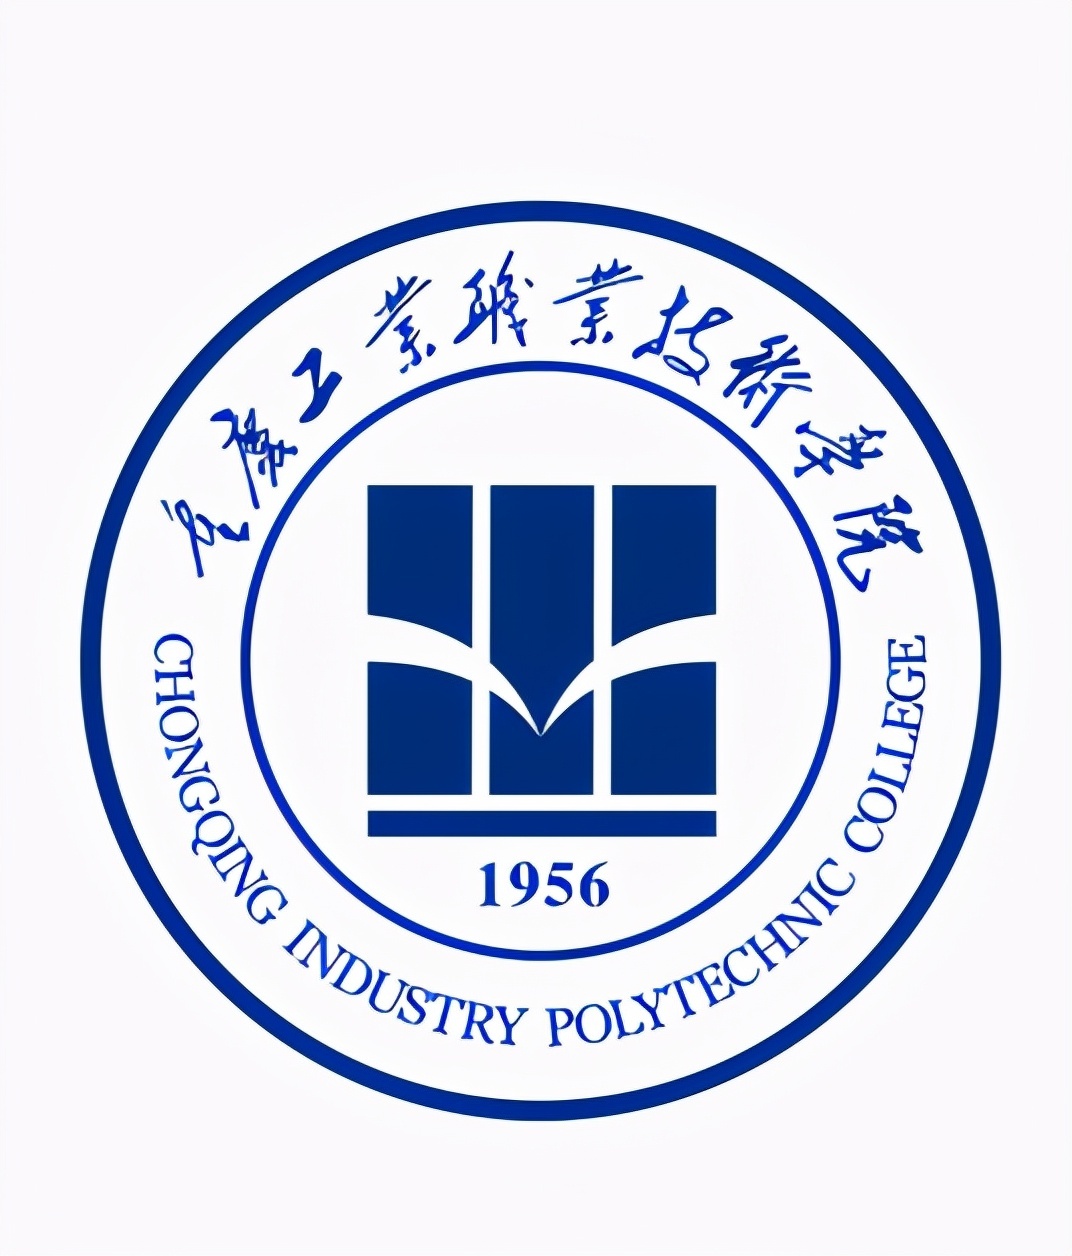 2022年重庆市高职院校排名